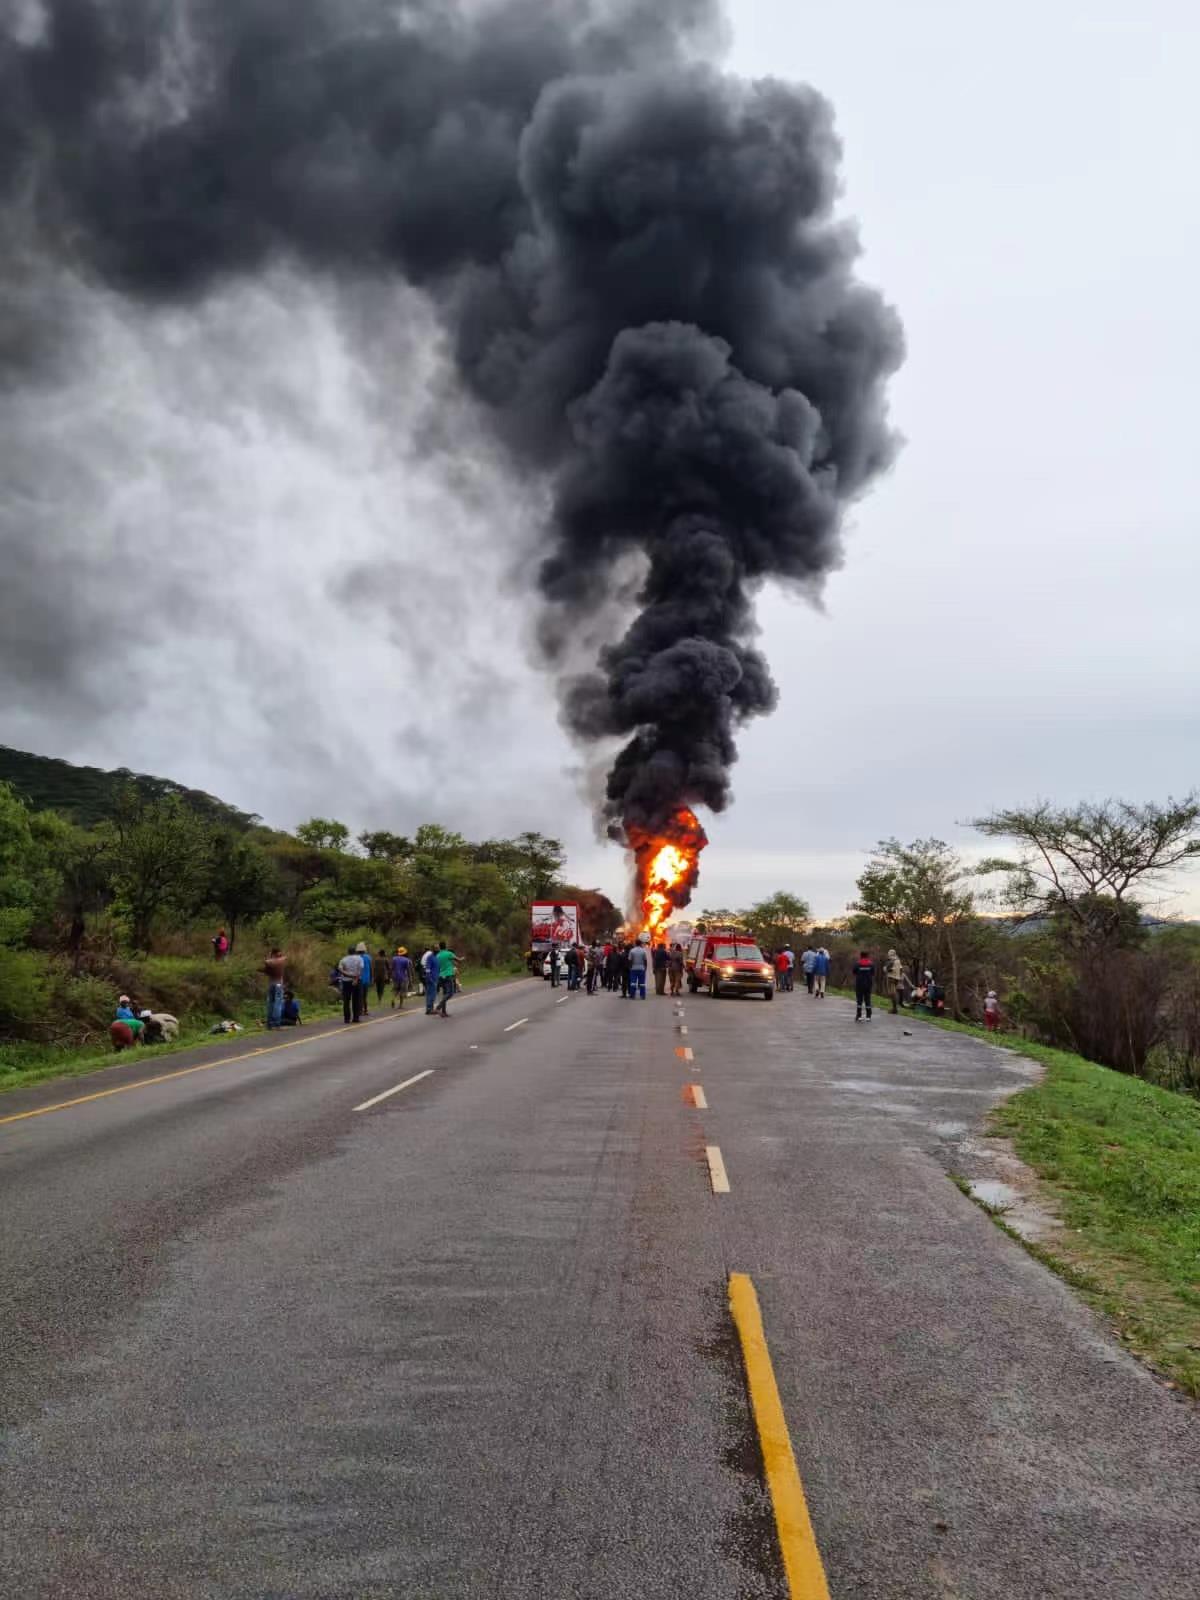 津巴布韦一大巴车与油罐车相撞 已致4死多伤